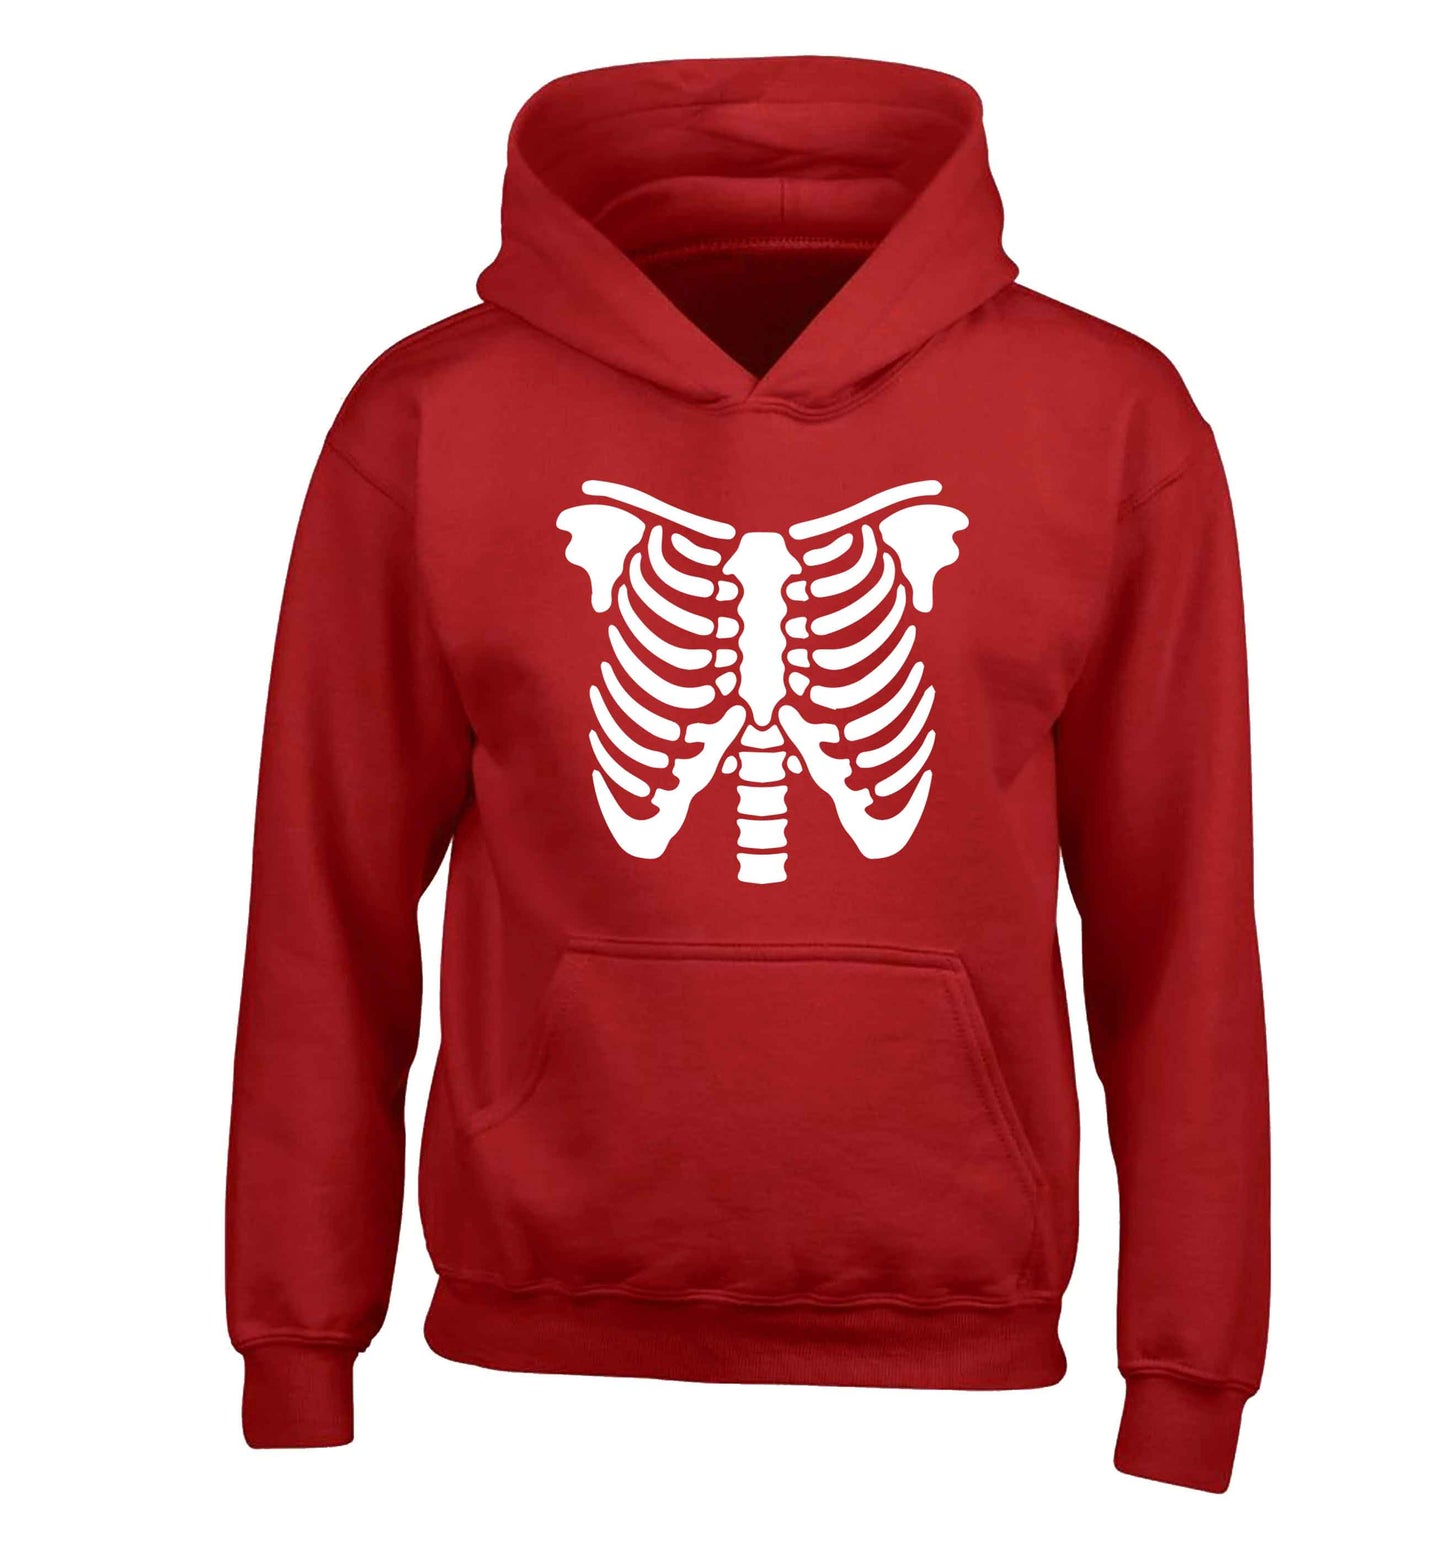 Skeleton ribcage children's red hoodie 12-13 Years